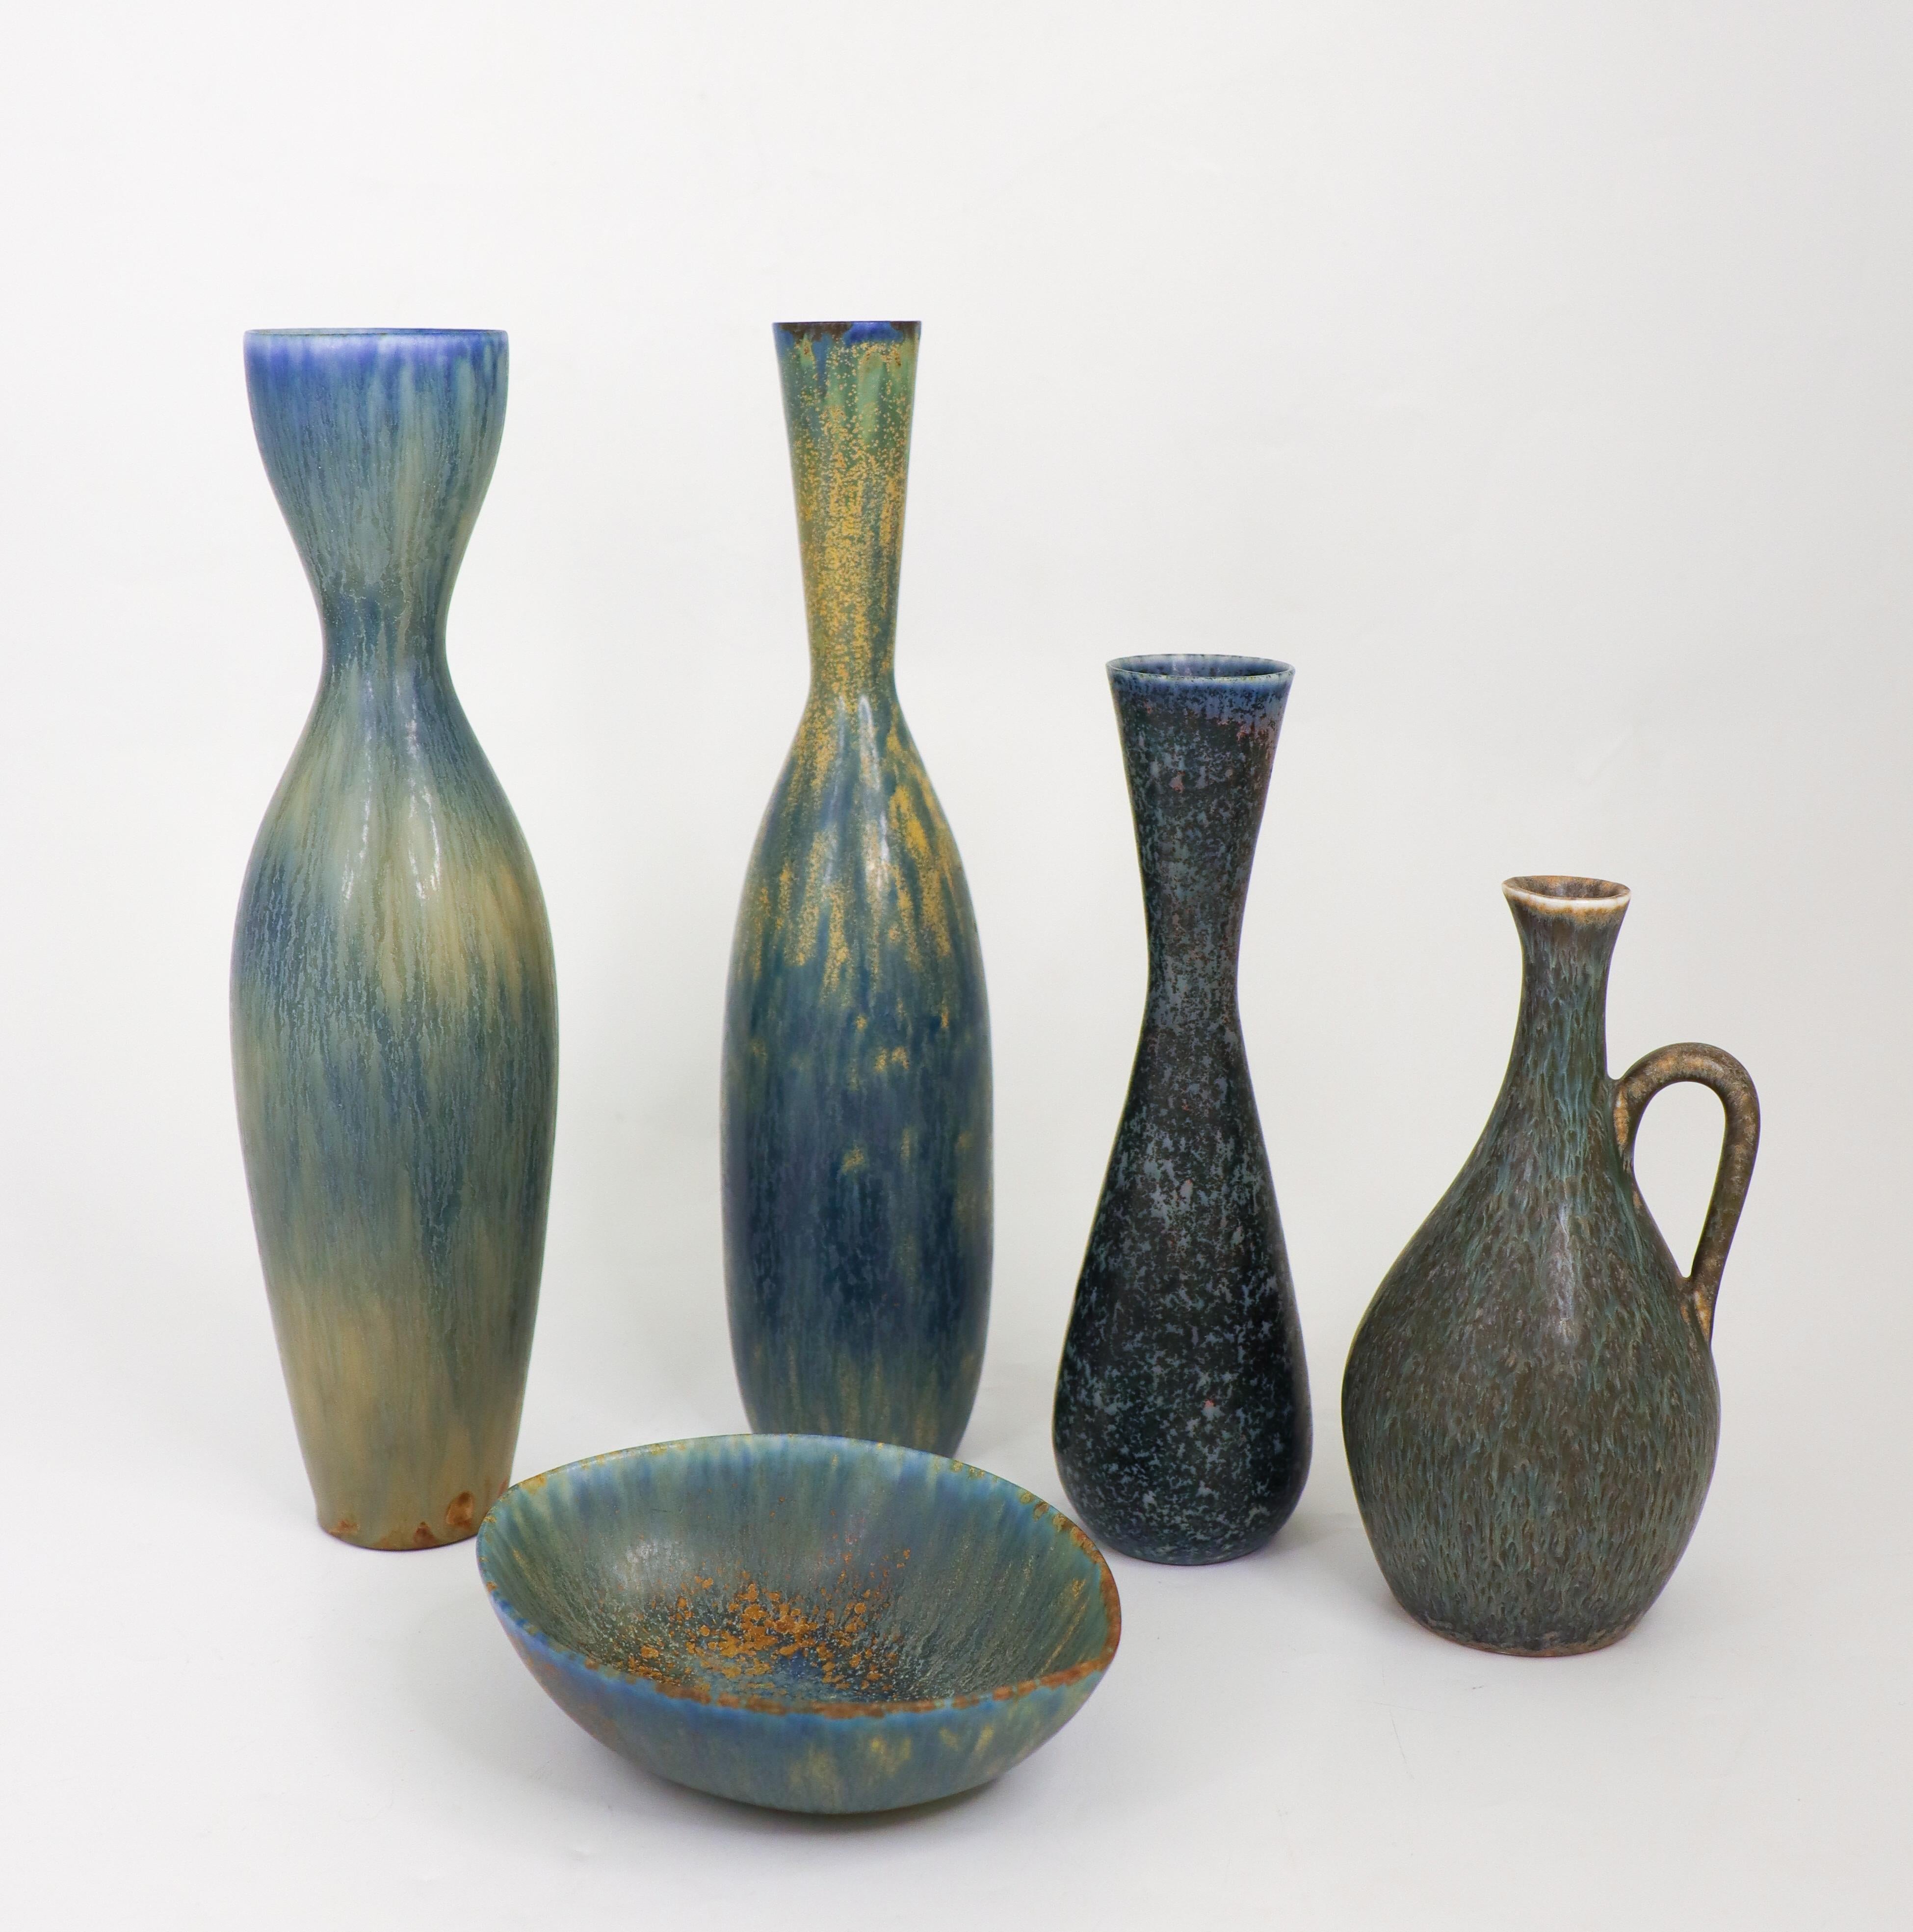 Un groupe de quatre vases et un bol aux glaçures étonnantes conçus par Carl-Harry Stålhane à Rörstrand dans les années 1950. Les vases se situent entre  16,5 - 28 cm de haut et en excellent état. Le bol mesure 14 x 11 cm de diamètre et ils sont tous